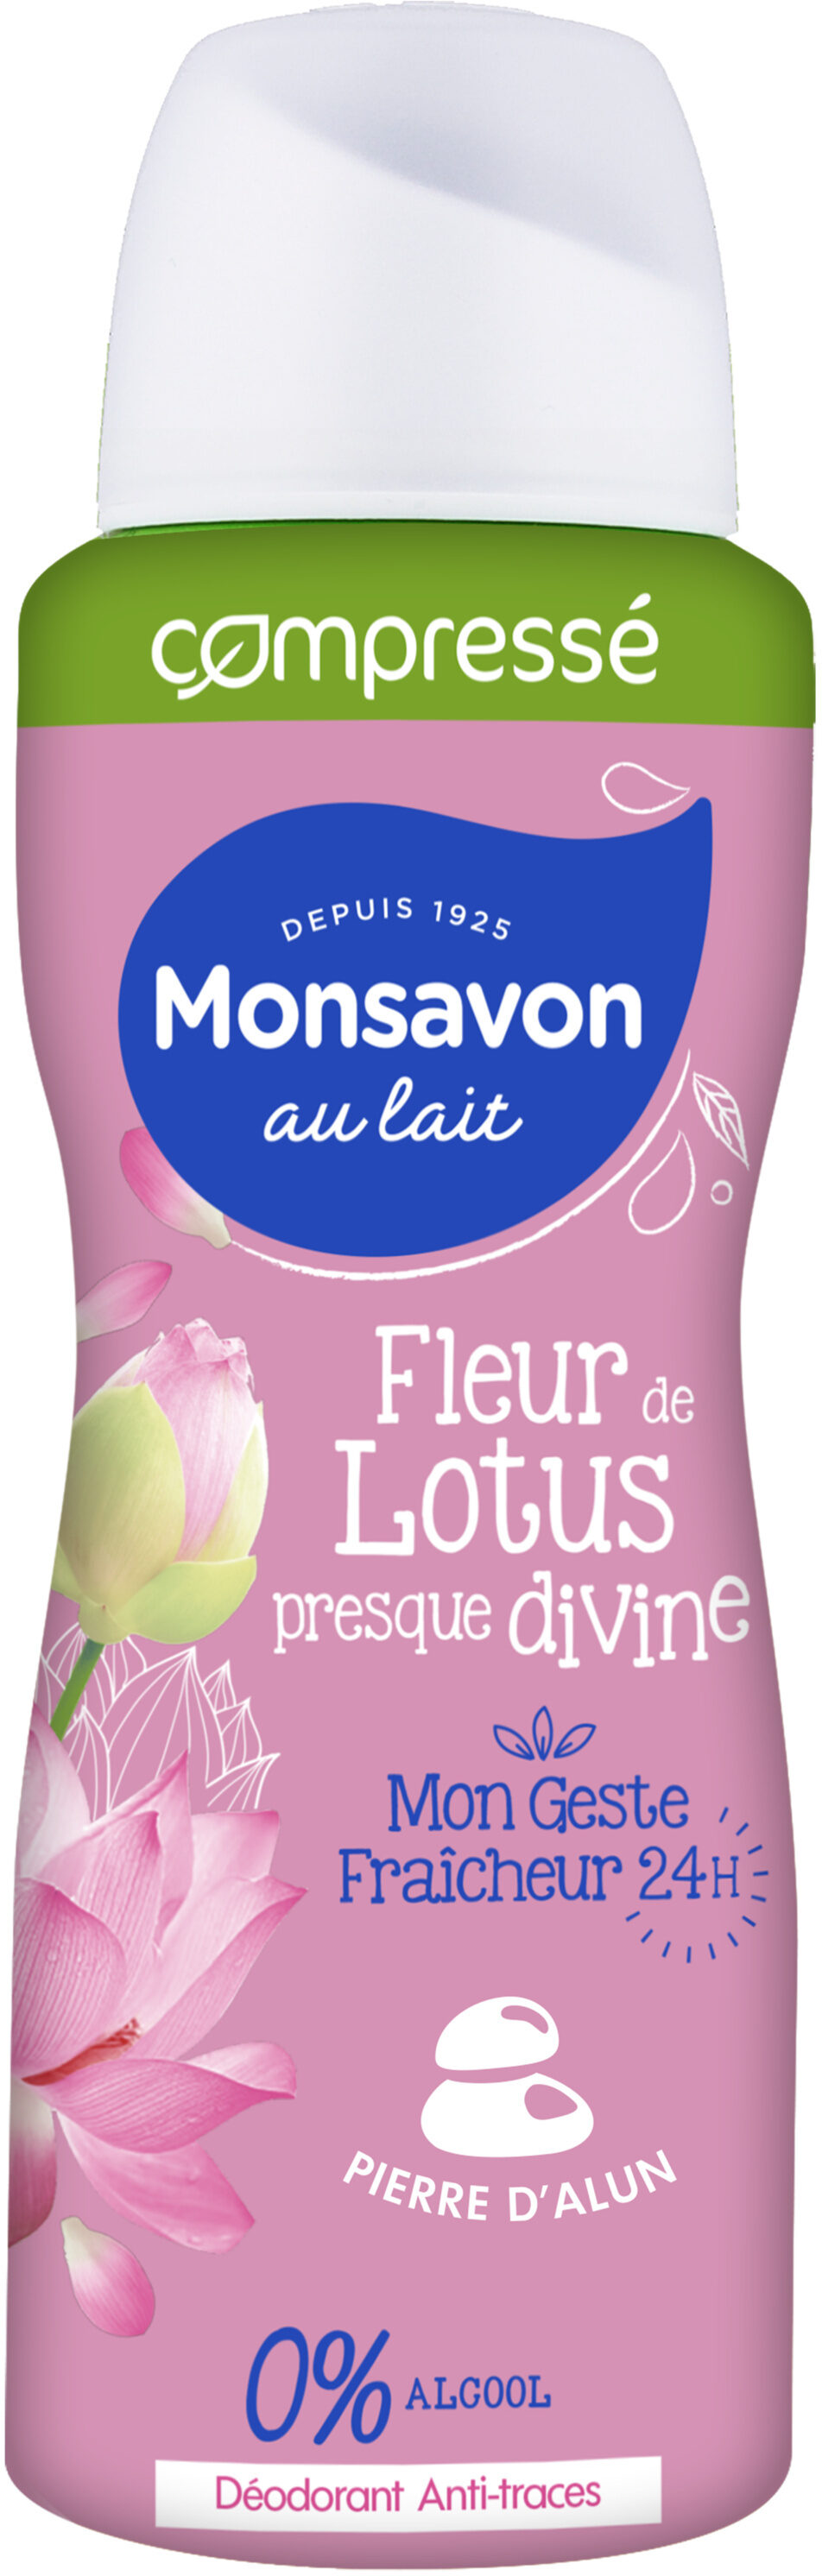 Monsavon Déodorant Femme Spray Antibactérien Pierre d'Alun Lait & Fleur de Lotus 100ml - Produit - fr